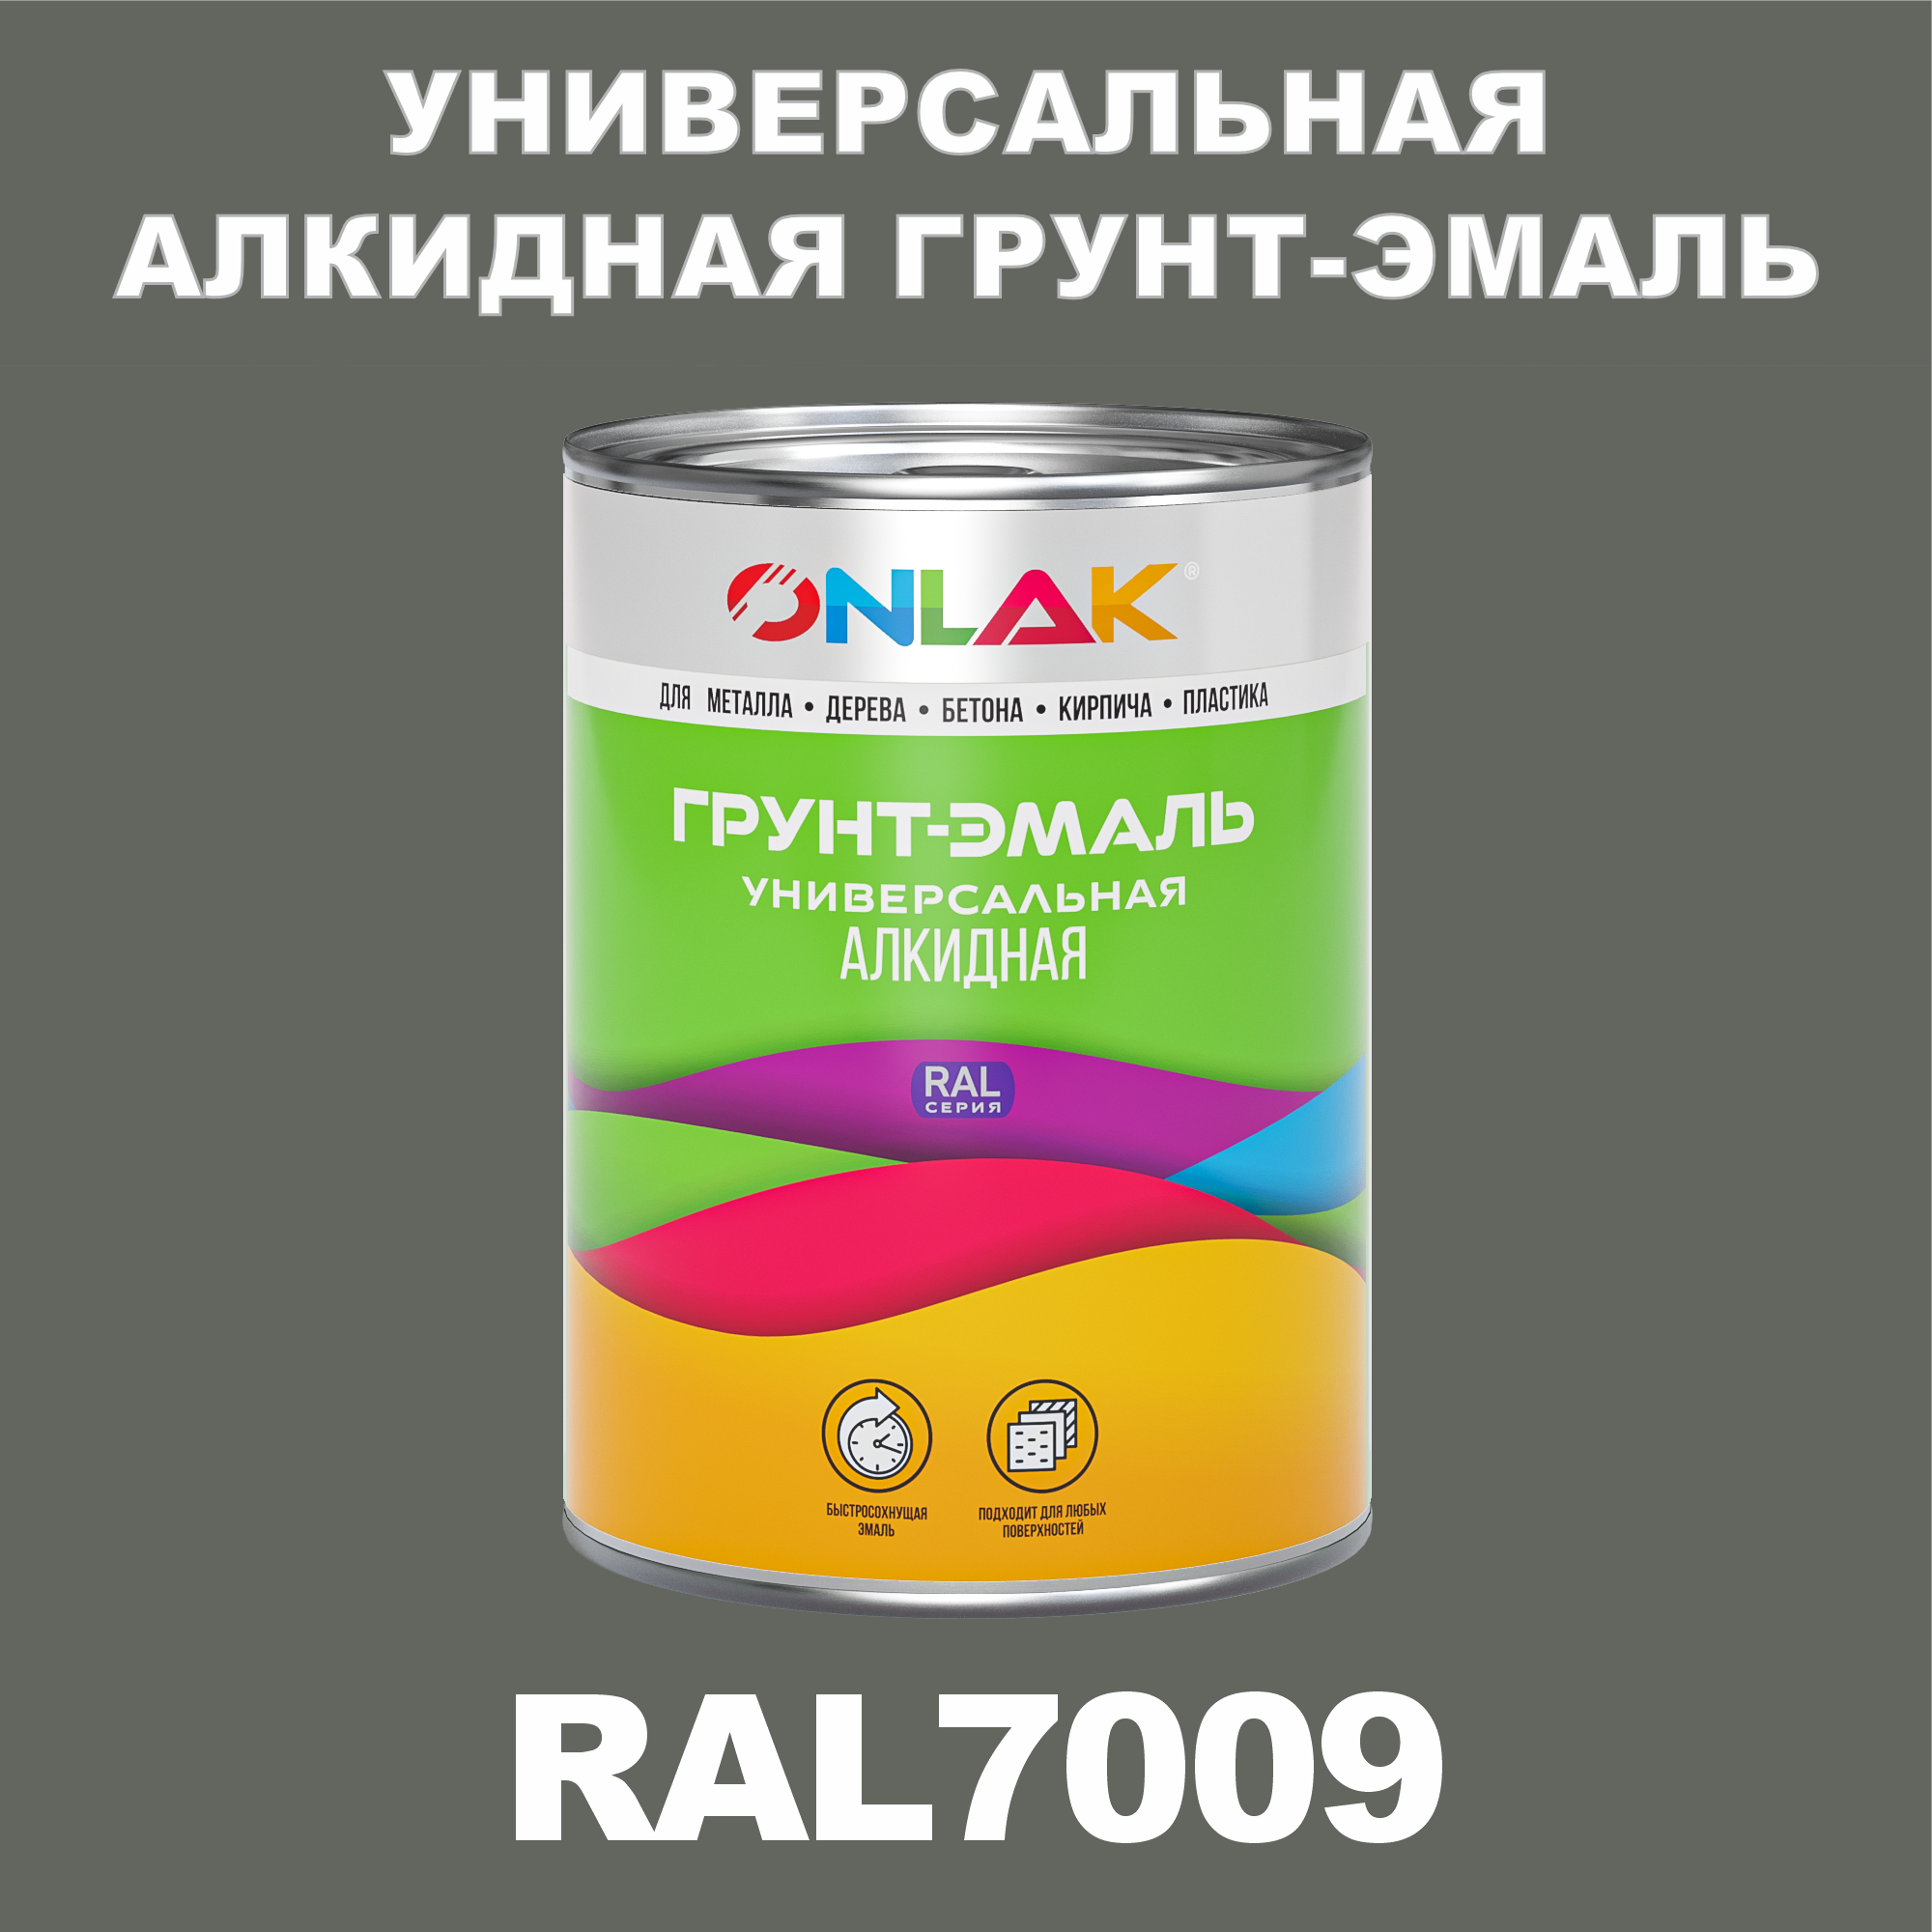 Грунт-эмаль ONLAK 1К RAL7009 антикоррозионная алкидная по металлу по ржавчине 1 кг антикоррозионная грунт эмаль elcon